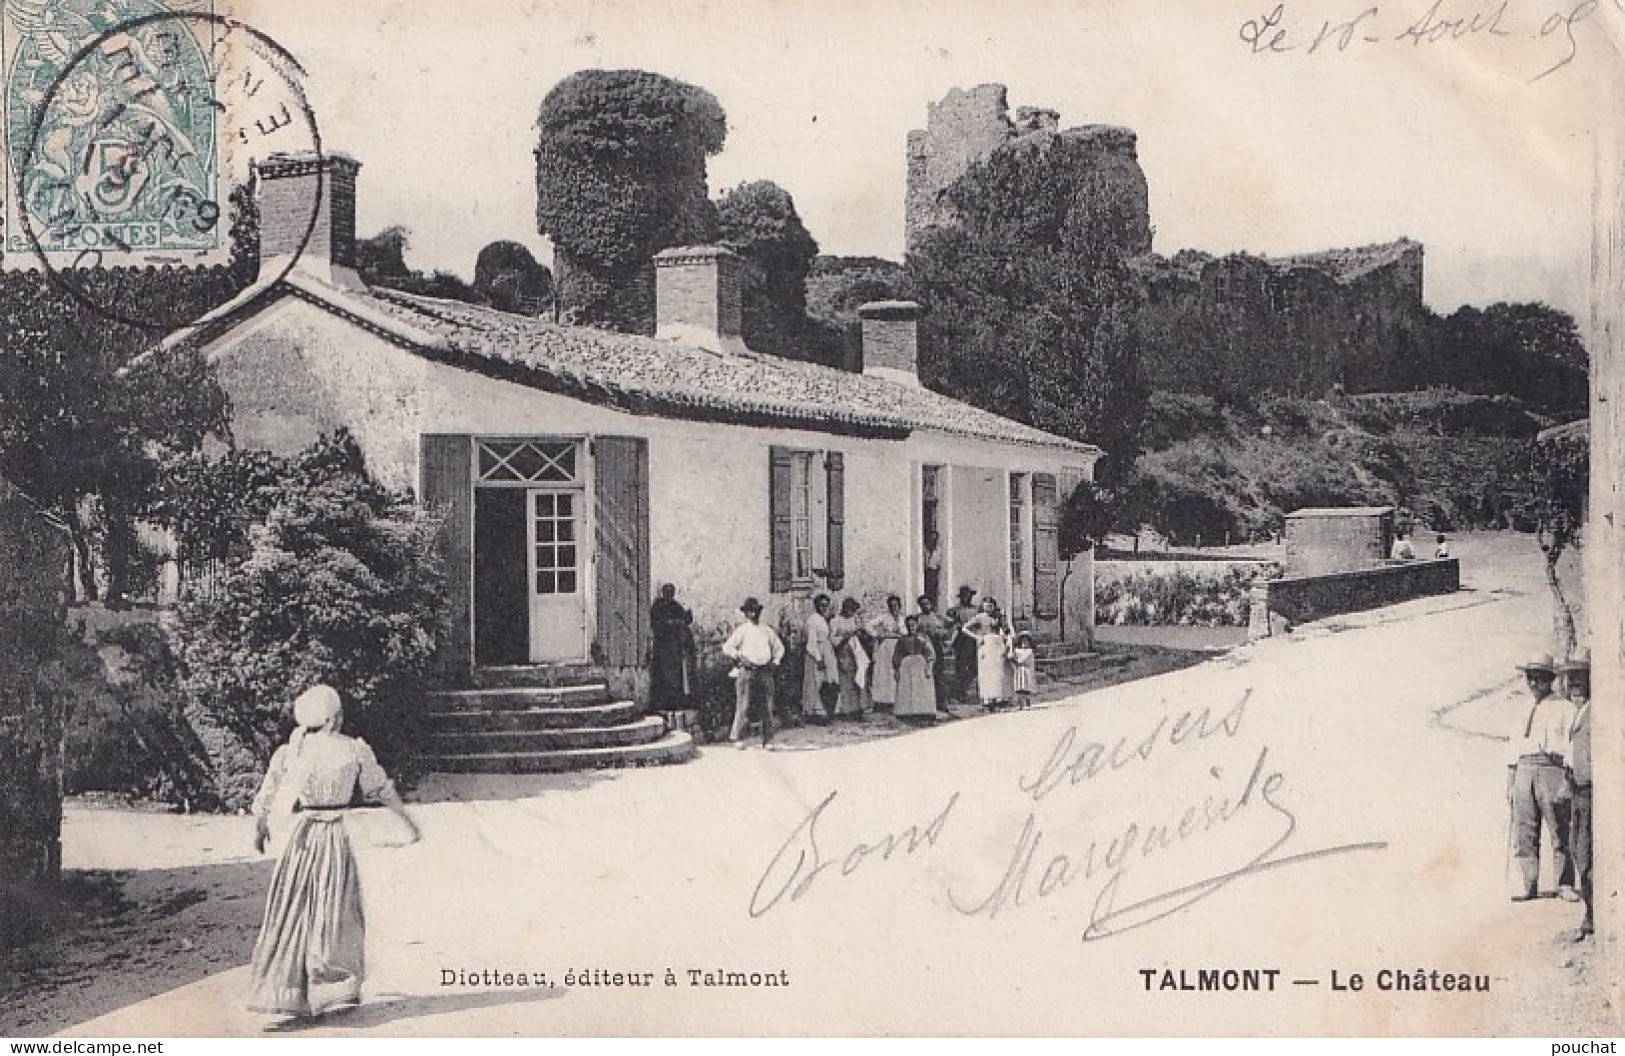 A15-85) TALMONT - VENDEE - LE CHATEAU  - MAISON - HABITANTS - EDIT. DIOTTEAU - EN 1 905 - Talmont Saint Hilaire